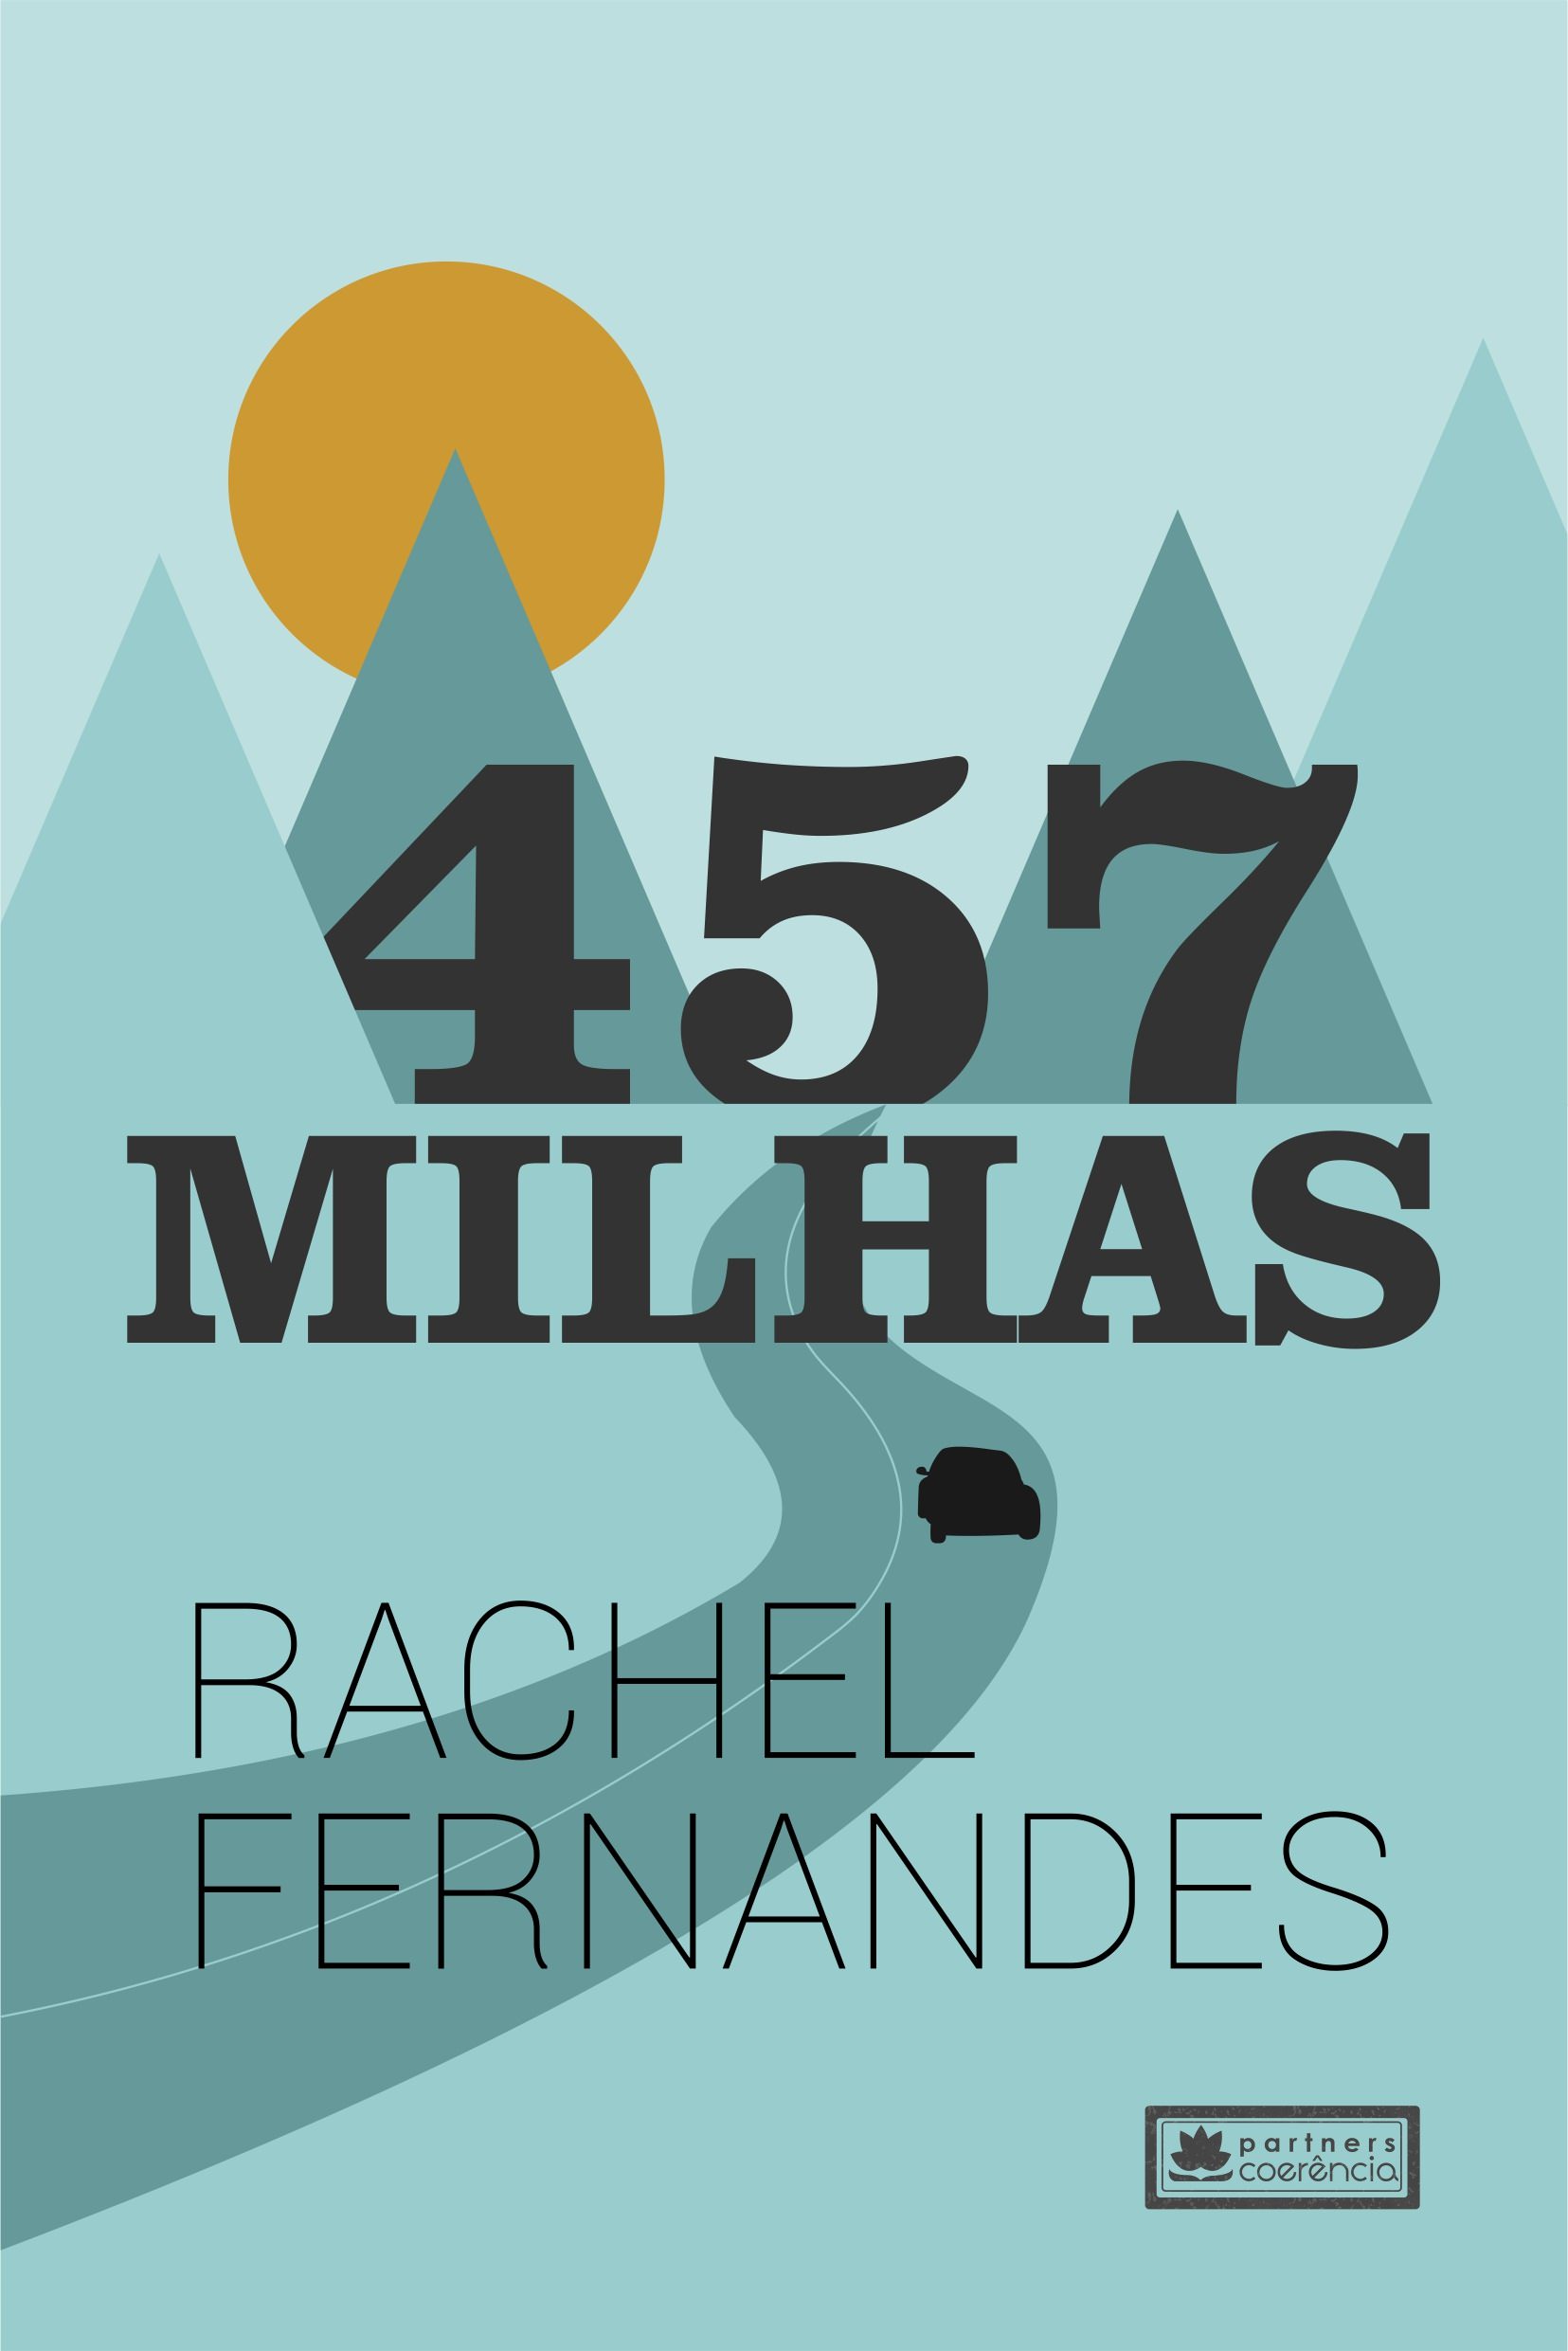 Livro "457 Milhas" de Rachel Fernandes, capa. Divulgação.